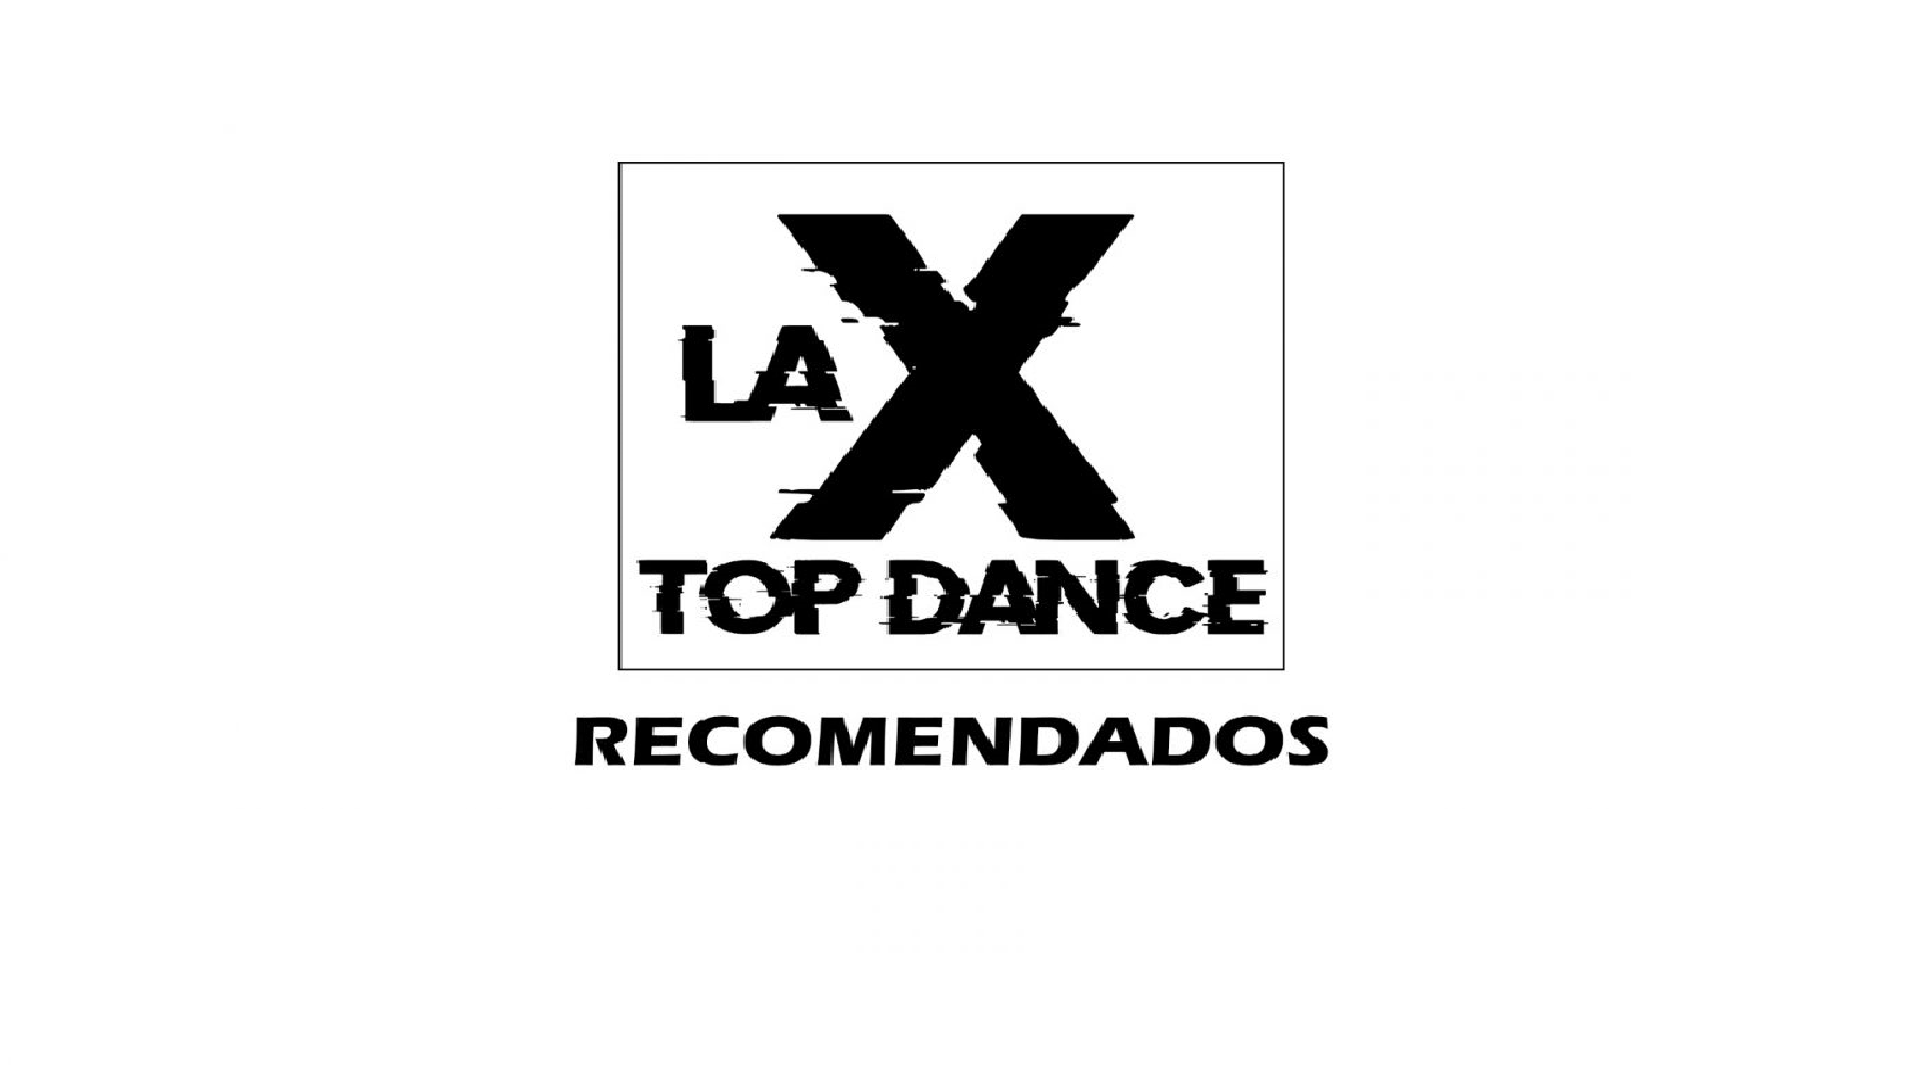 RECOMENDADOS LA X TOP DANCE 26 FEBRERO